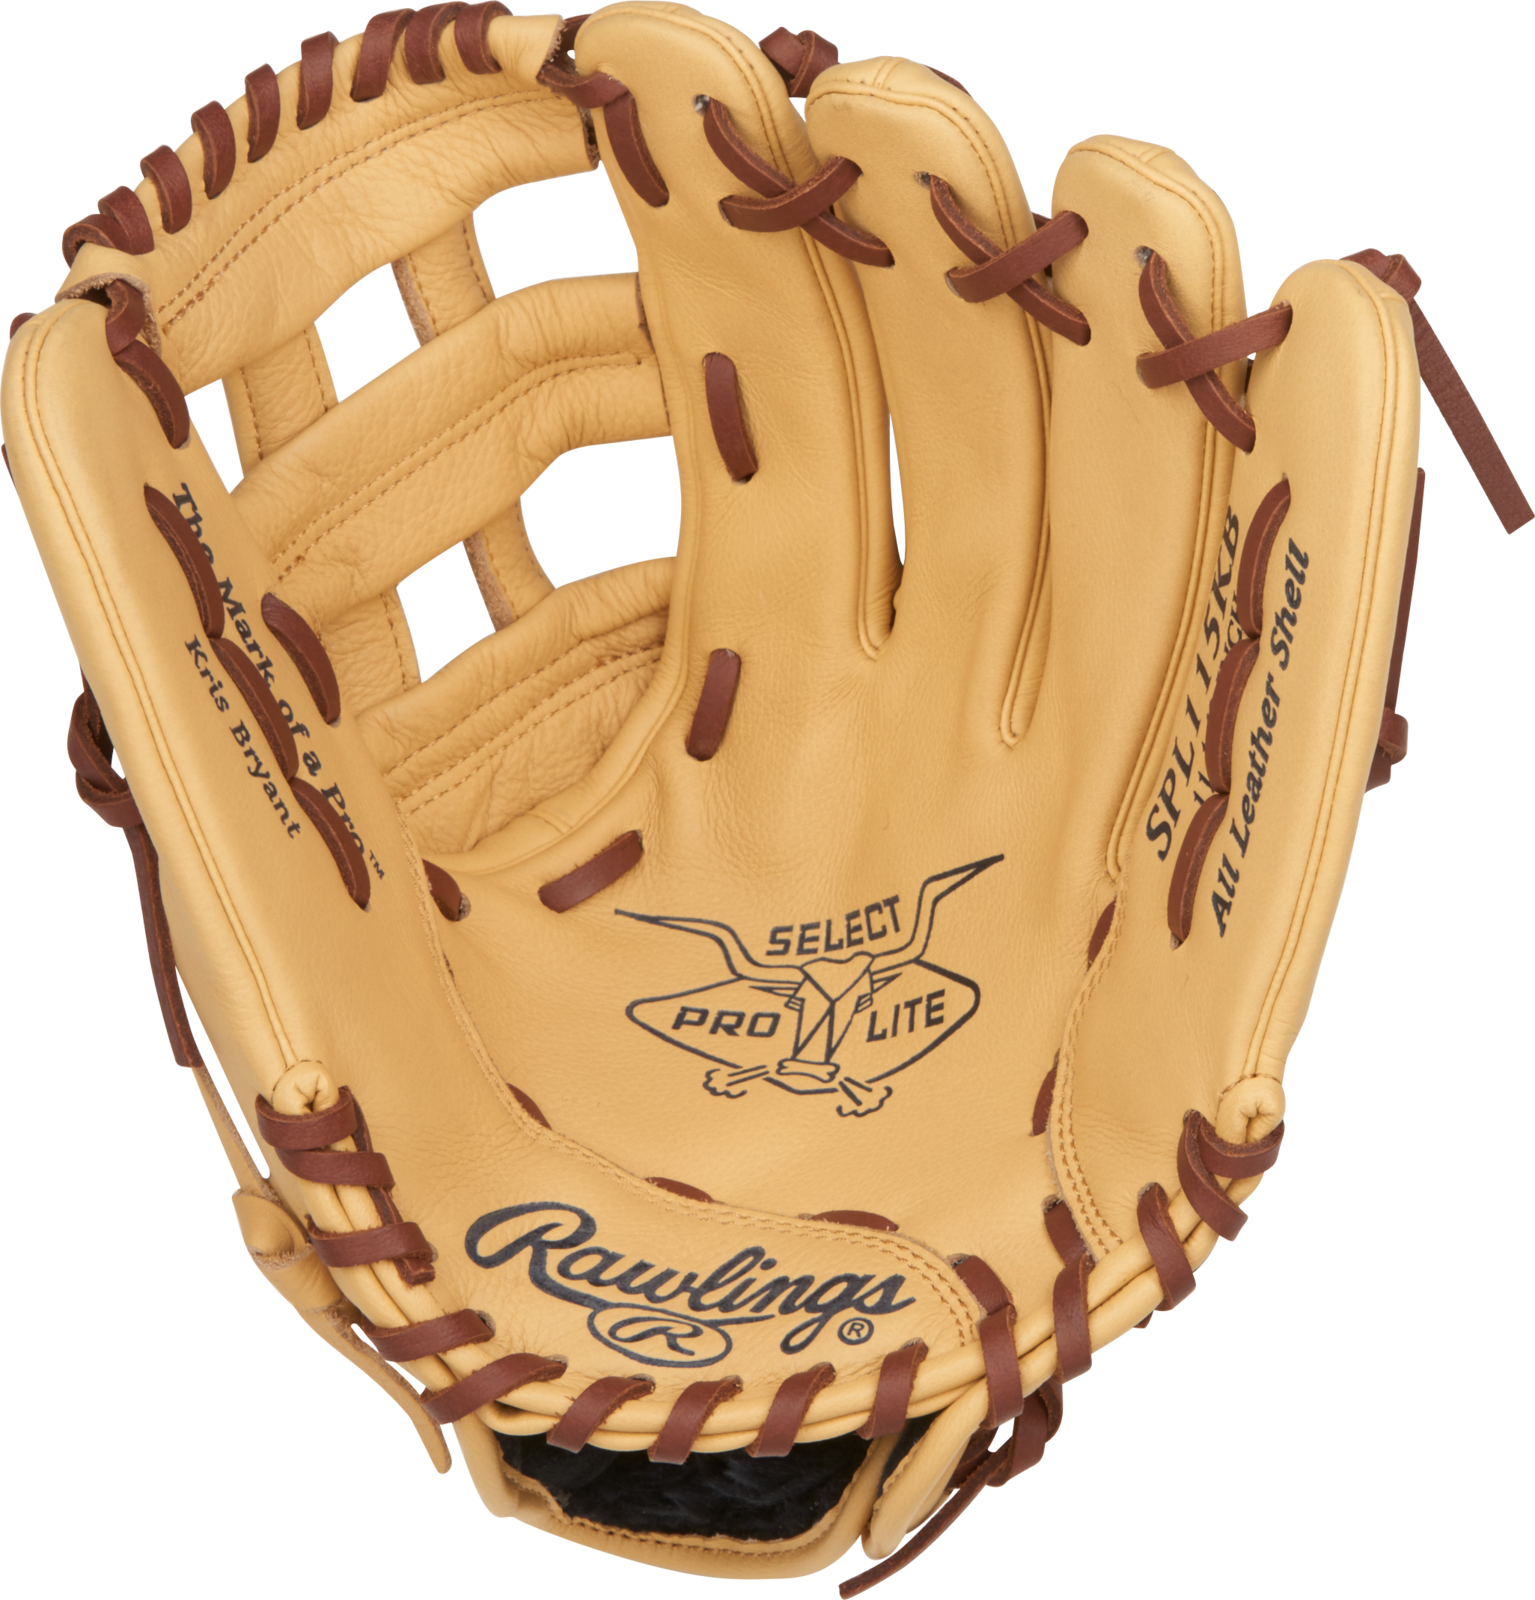 Rawlings Select Pro Lite Baseball Glove PNG image